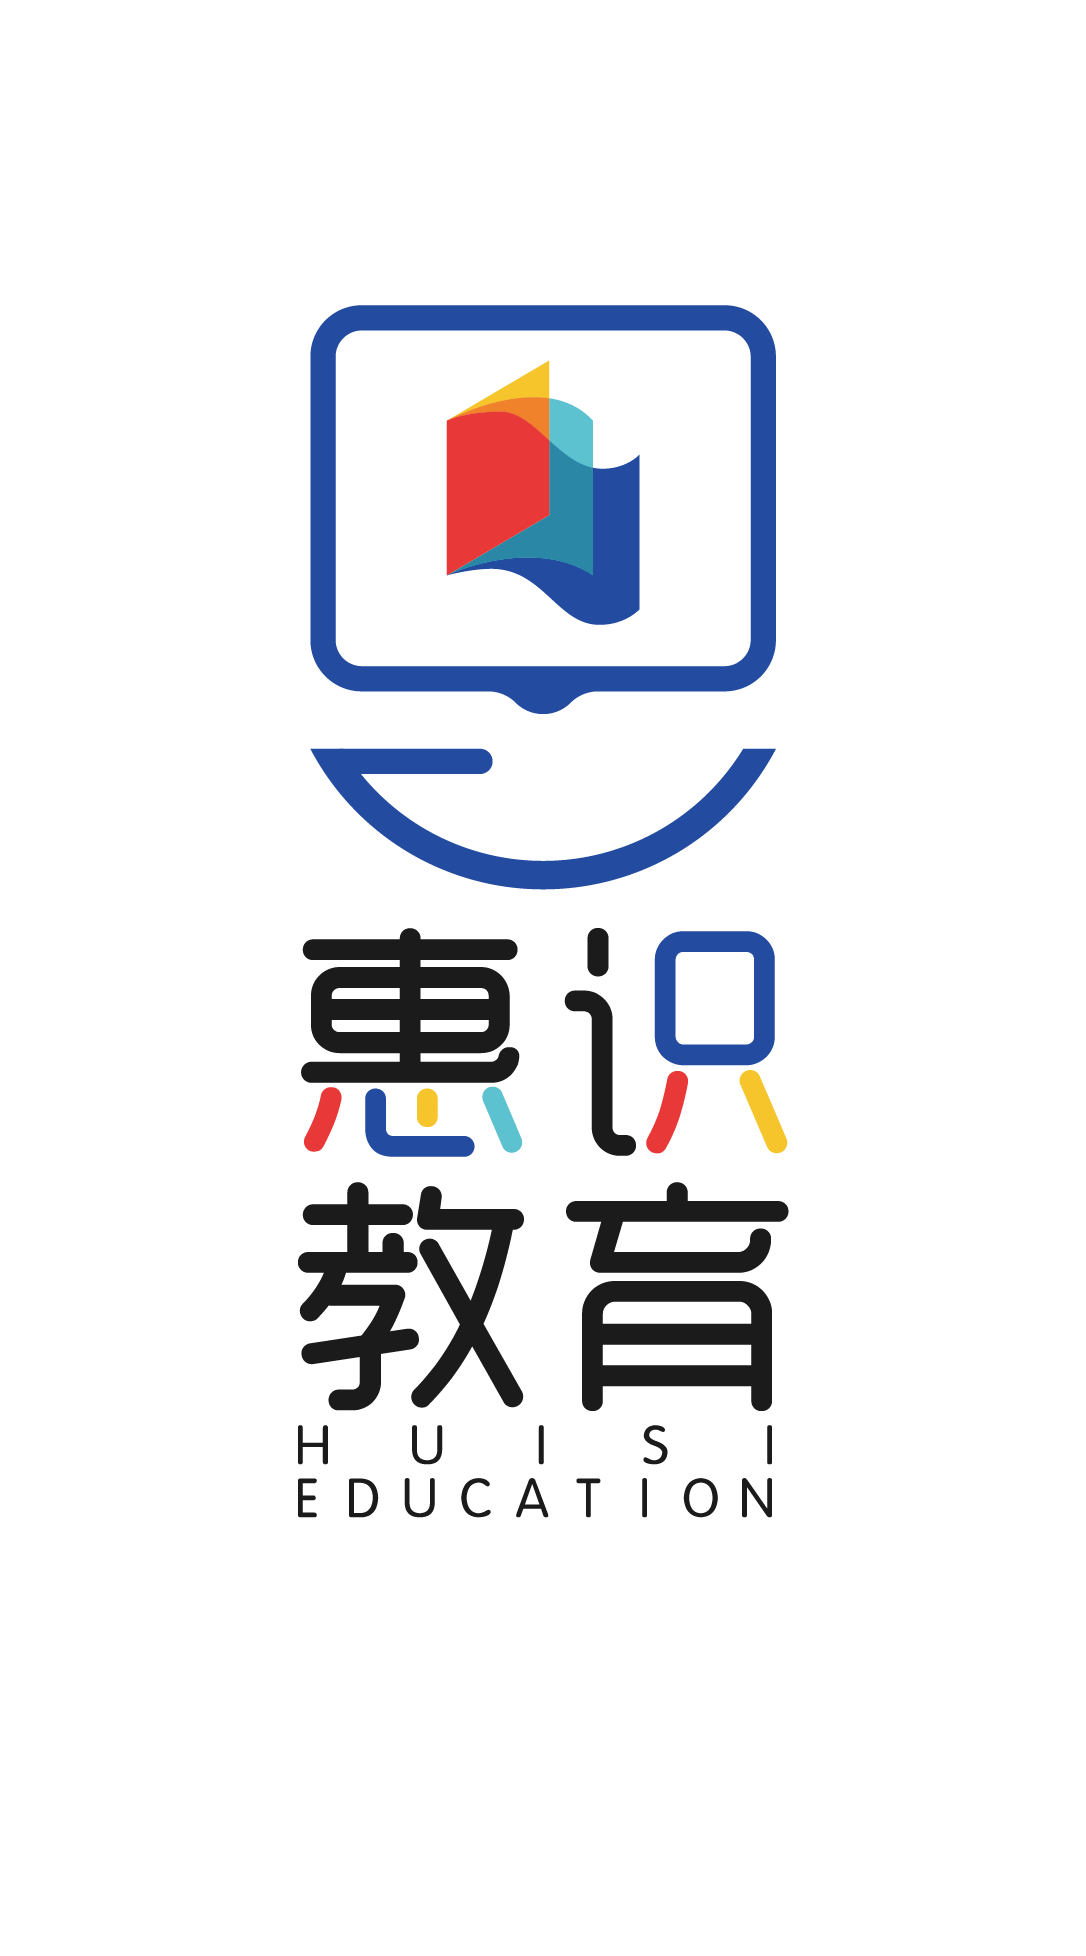 教育行业logo设计